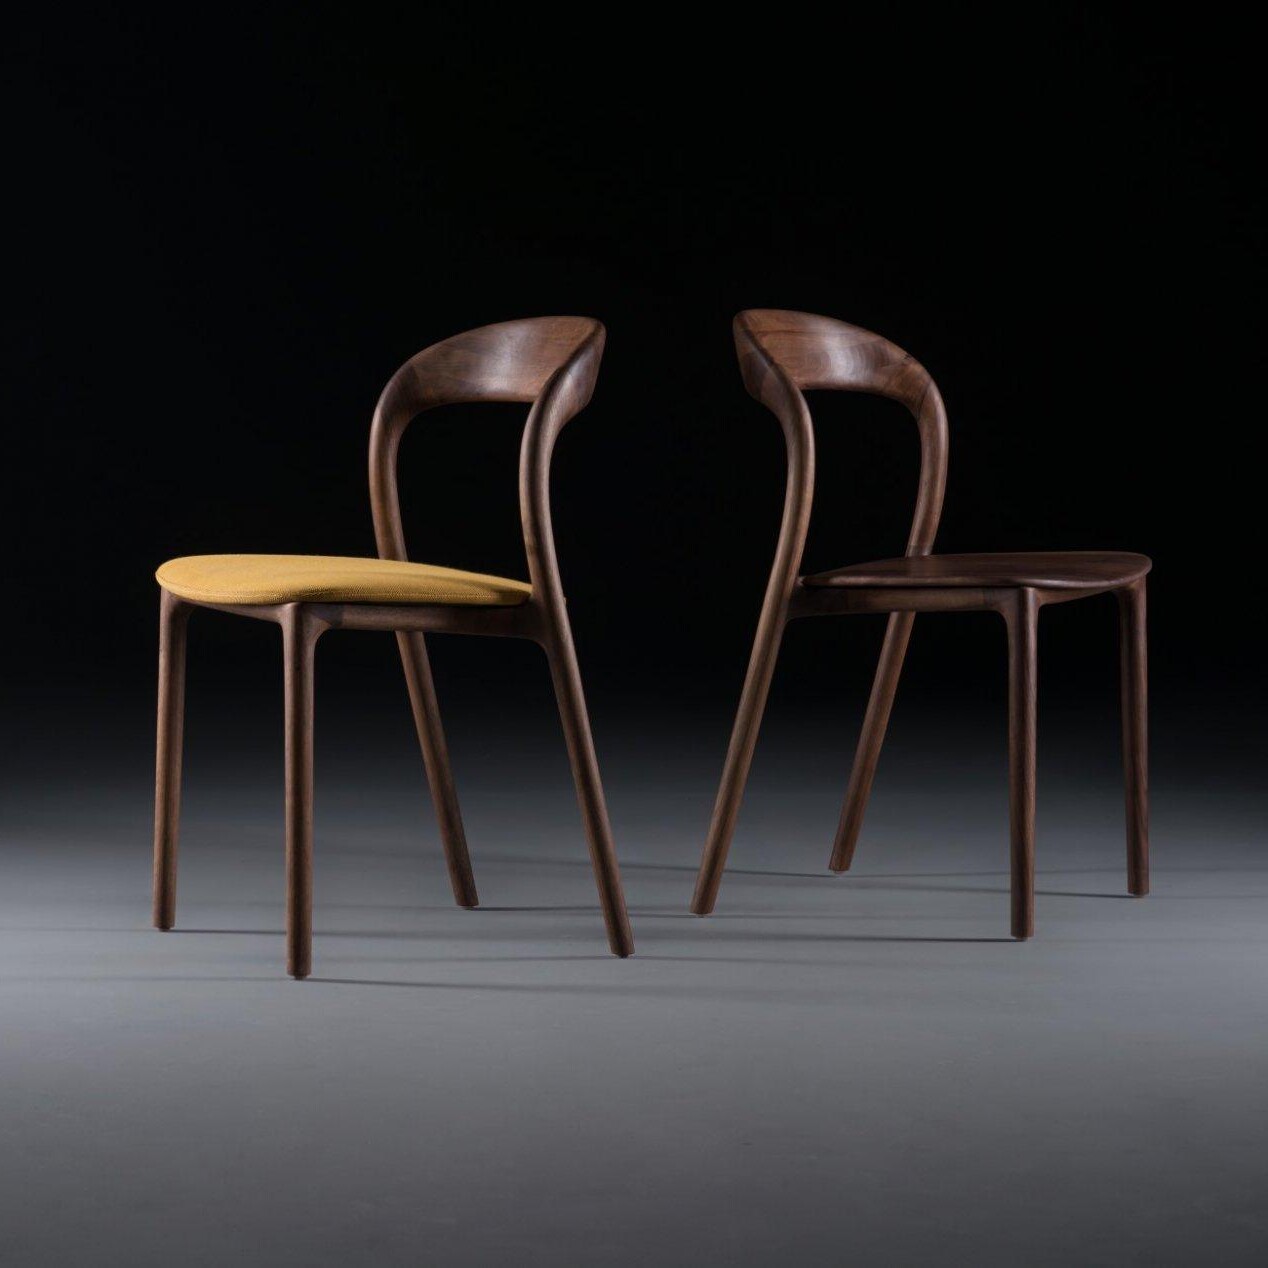 Online-Hemelaer-Interior-Artisan-Neva-Light-Stoel-Chair-00006